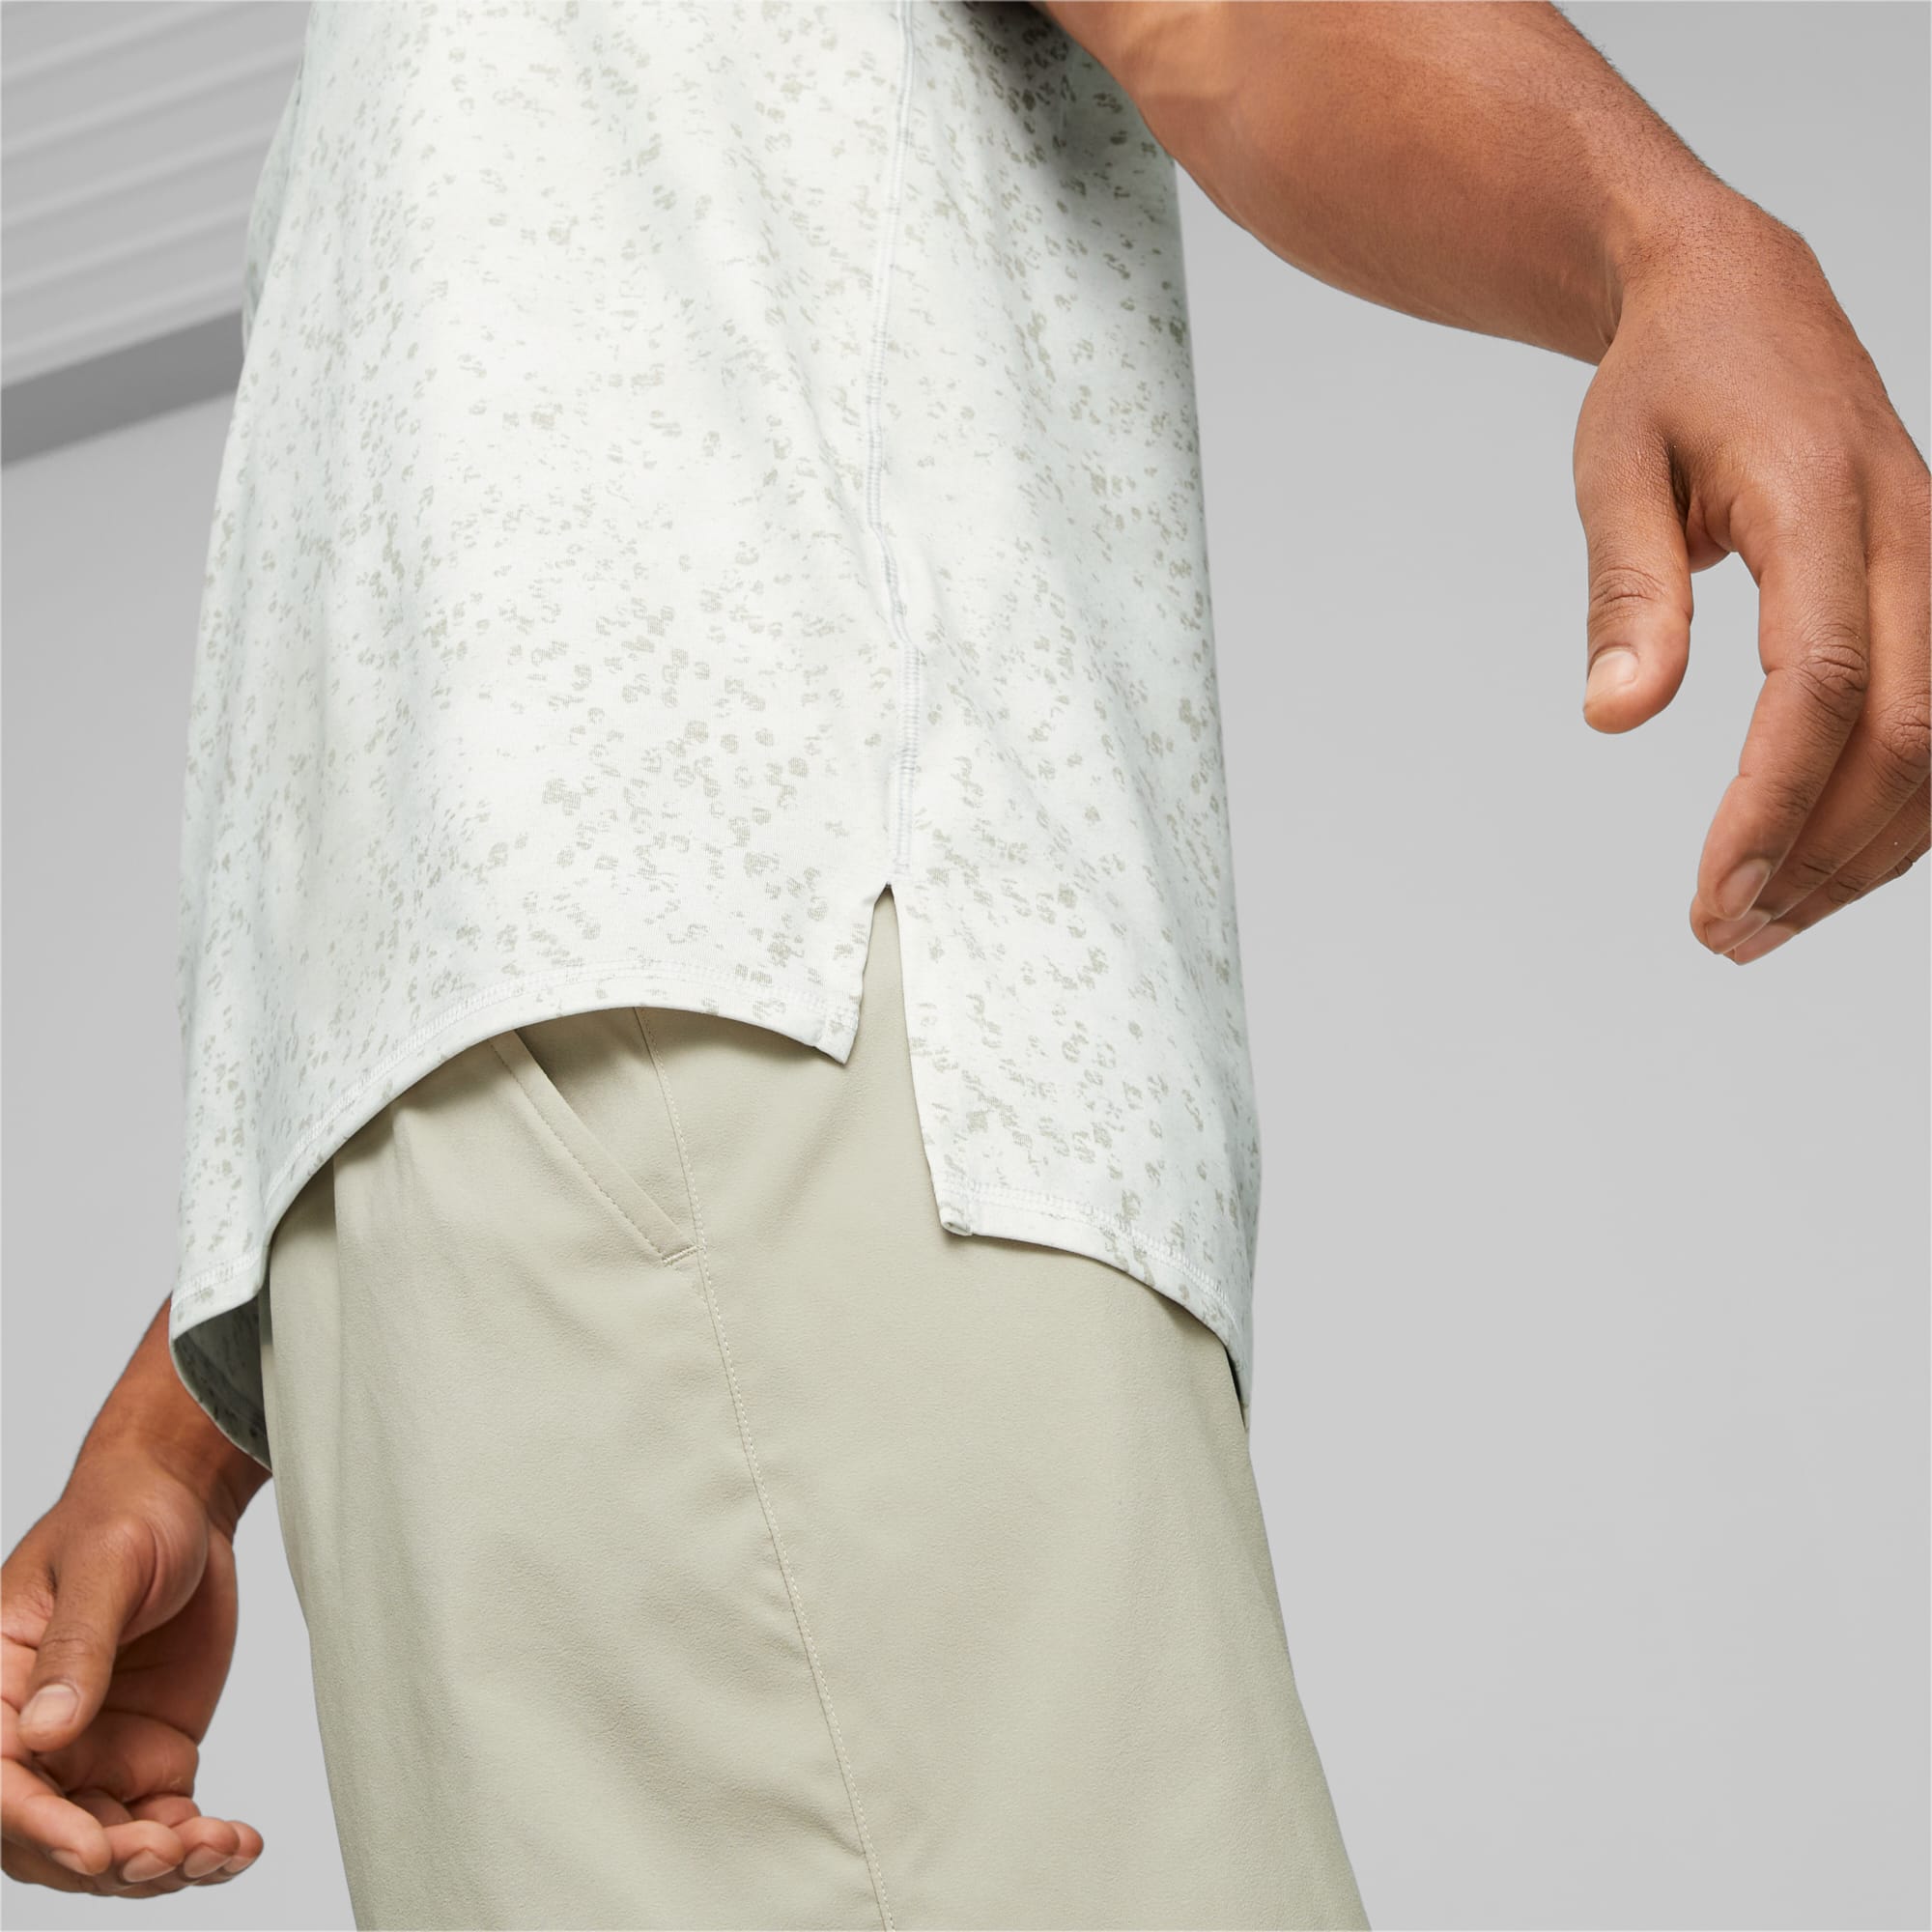 PUMA Studio Yogini Lite Bedrukt Trainings-T-shirt Voor Heren, Wit